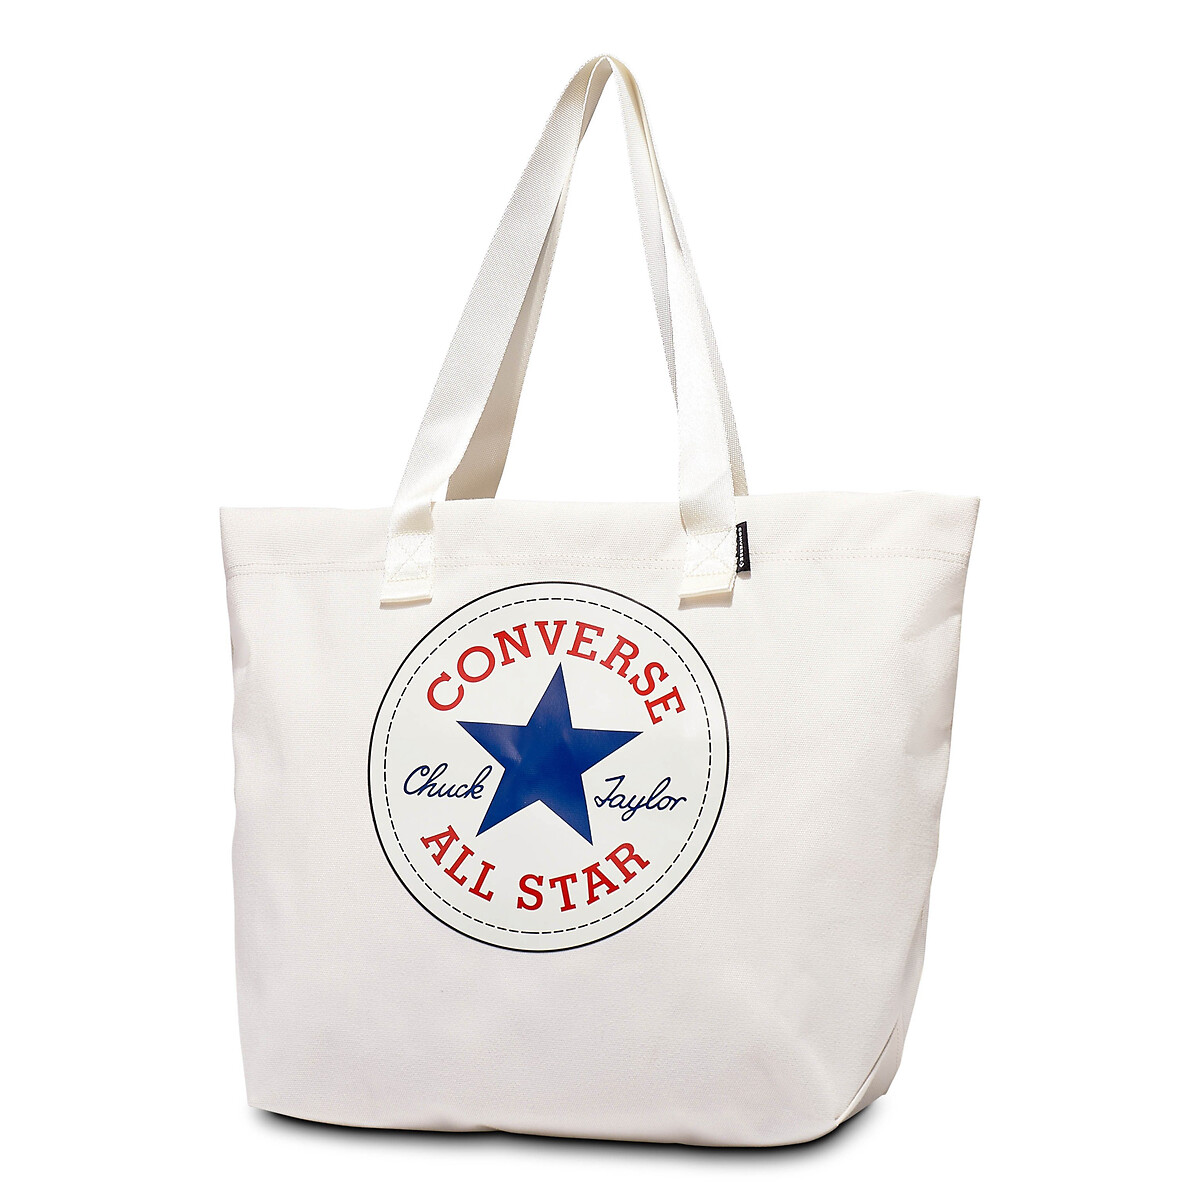 Tote Bag Graphic von Converse